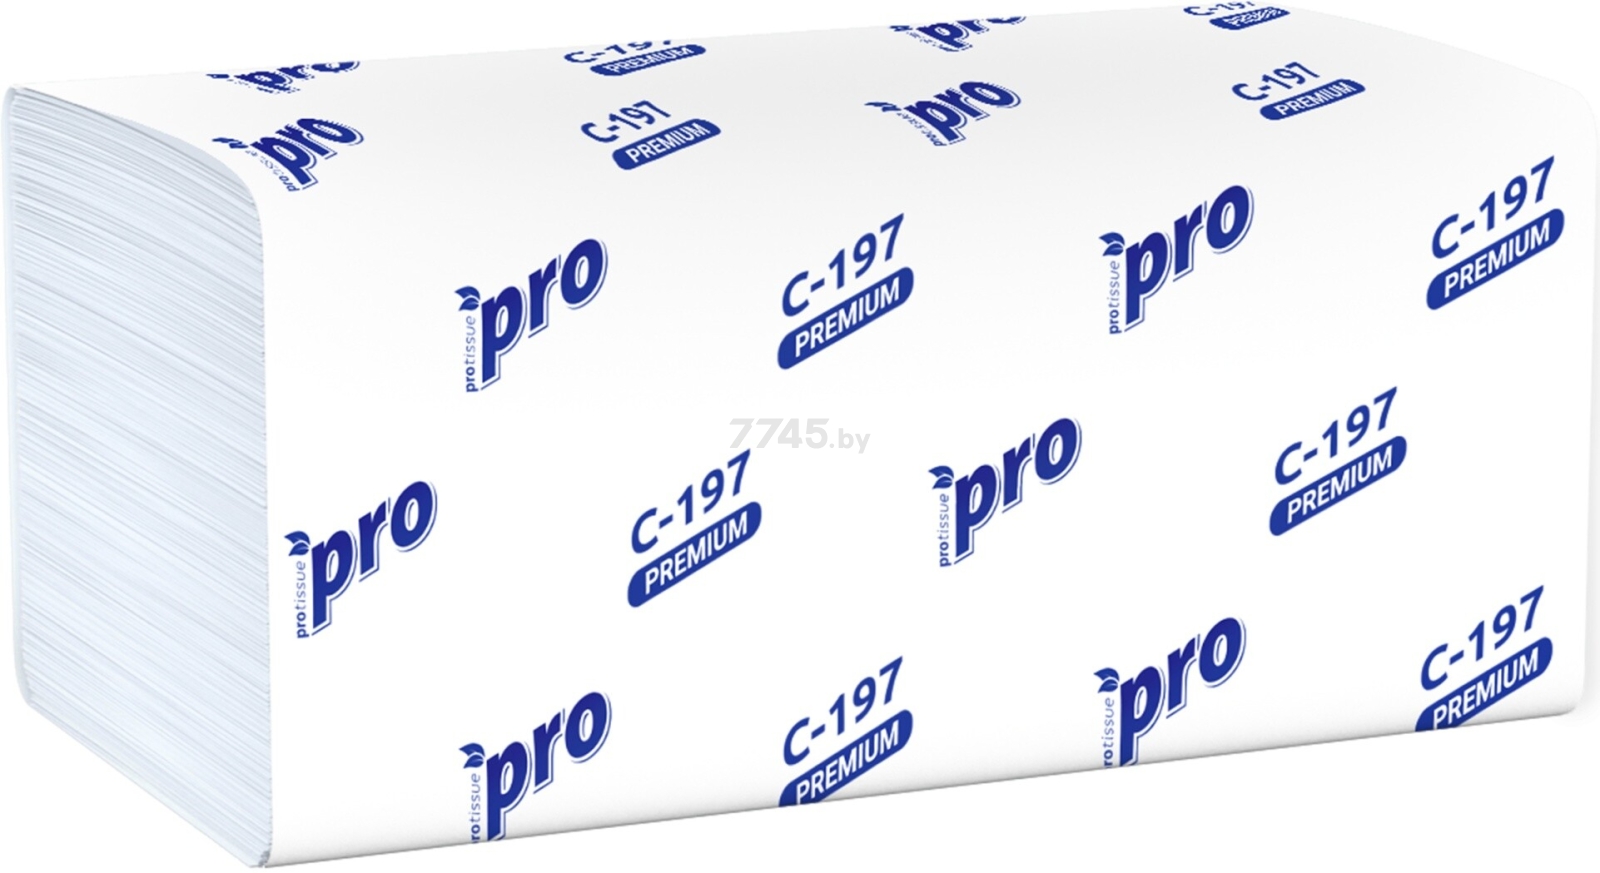 Полотенца бумажные PROTISSUE двухслойные V-сложения 200 штук (С197)